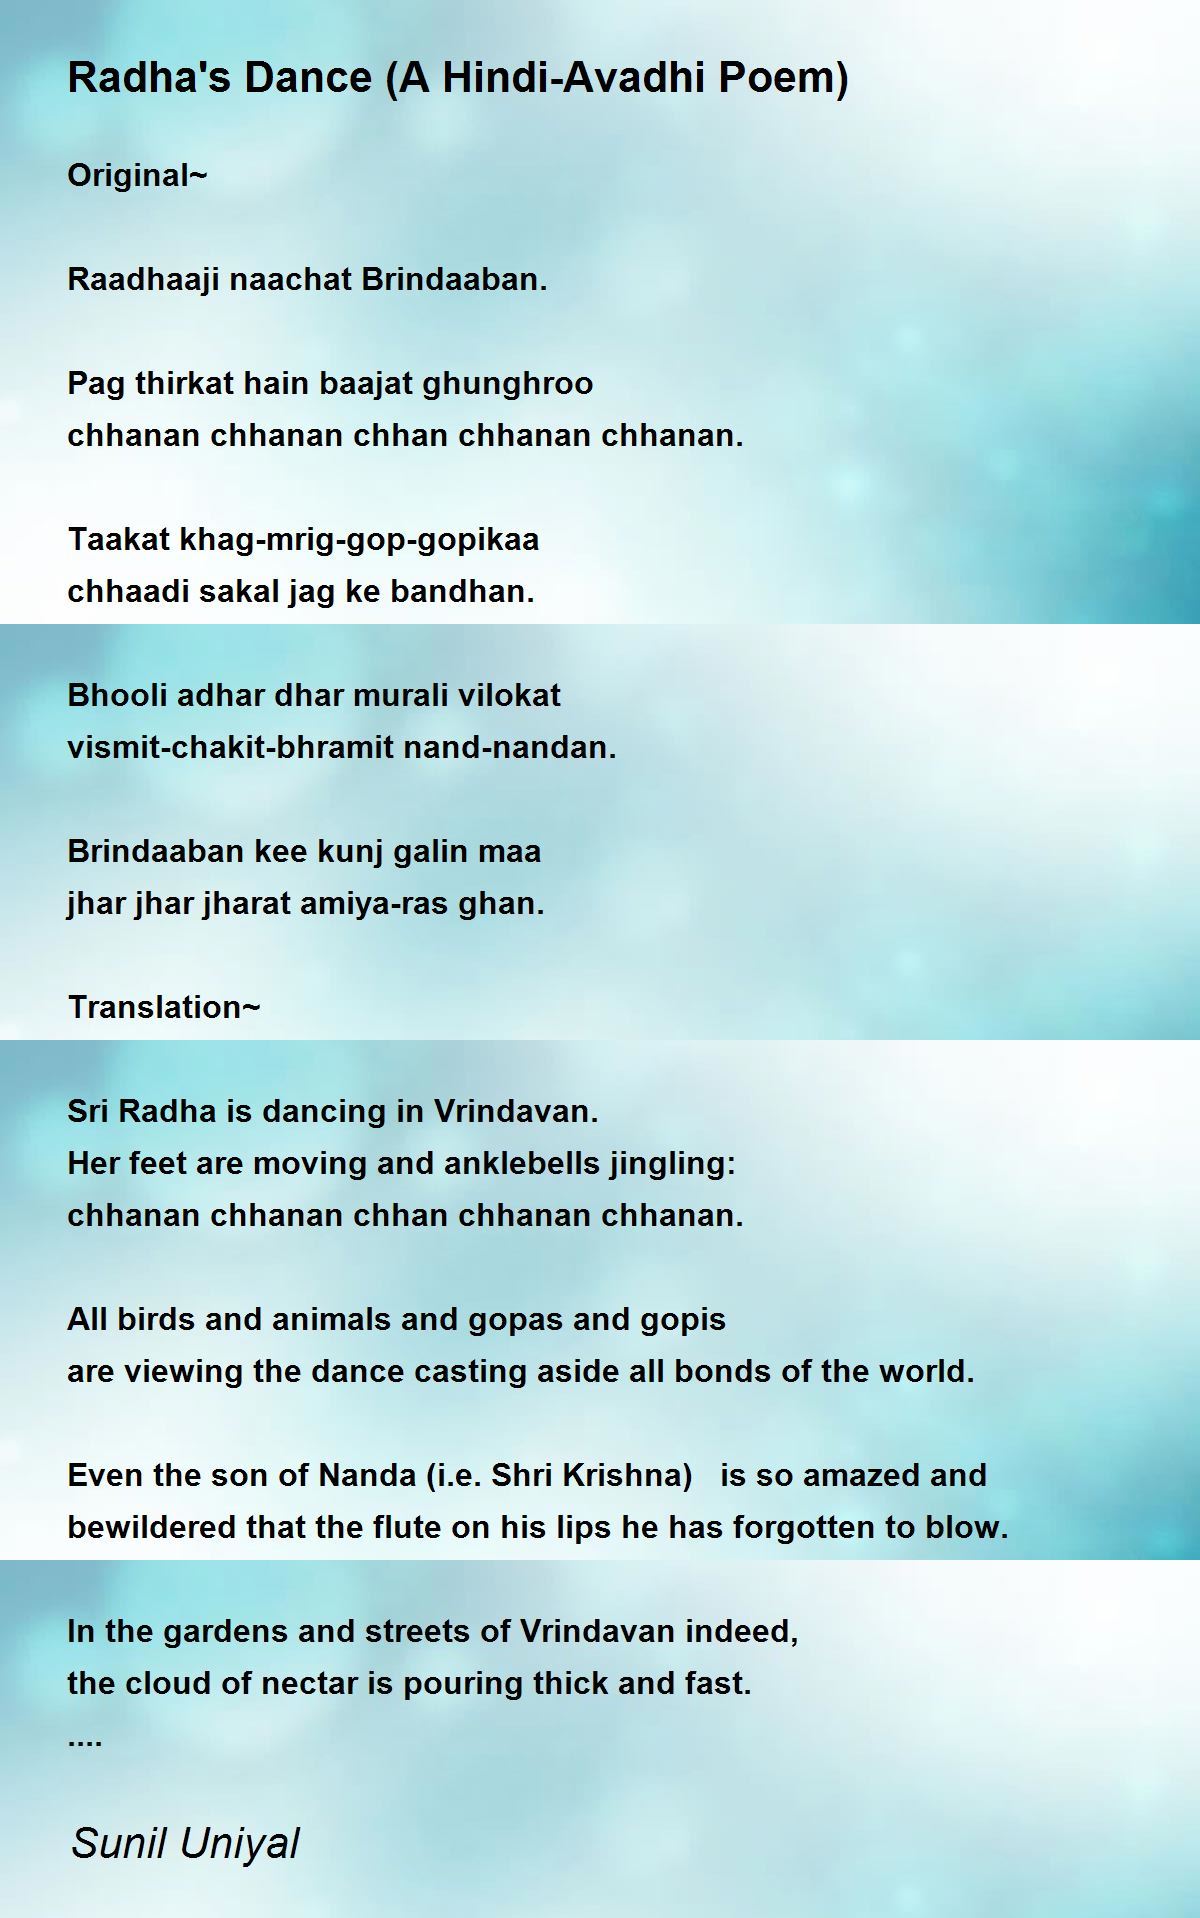 Radha's Dance (A Hindi-Avadhi Poem) - Radha's Dance (A Hindi-Avadhi Poem)  Poem by Sunil Uniyal